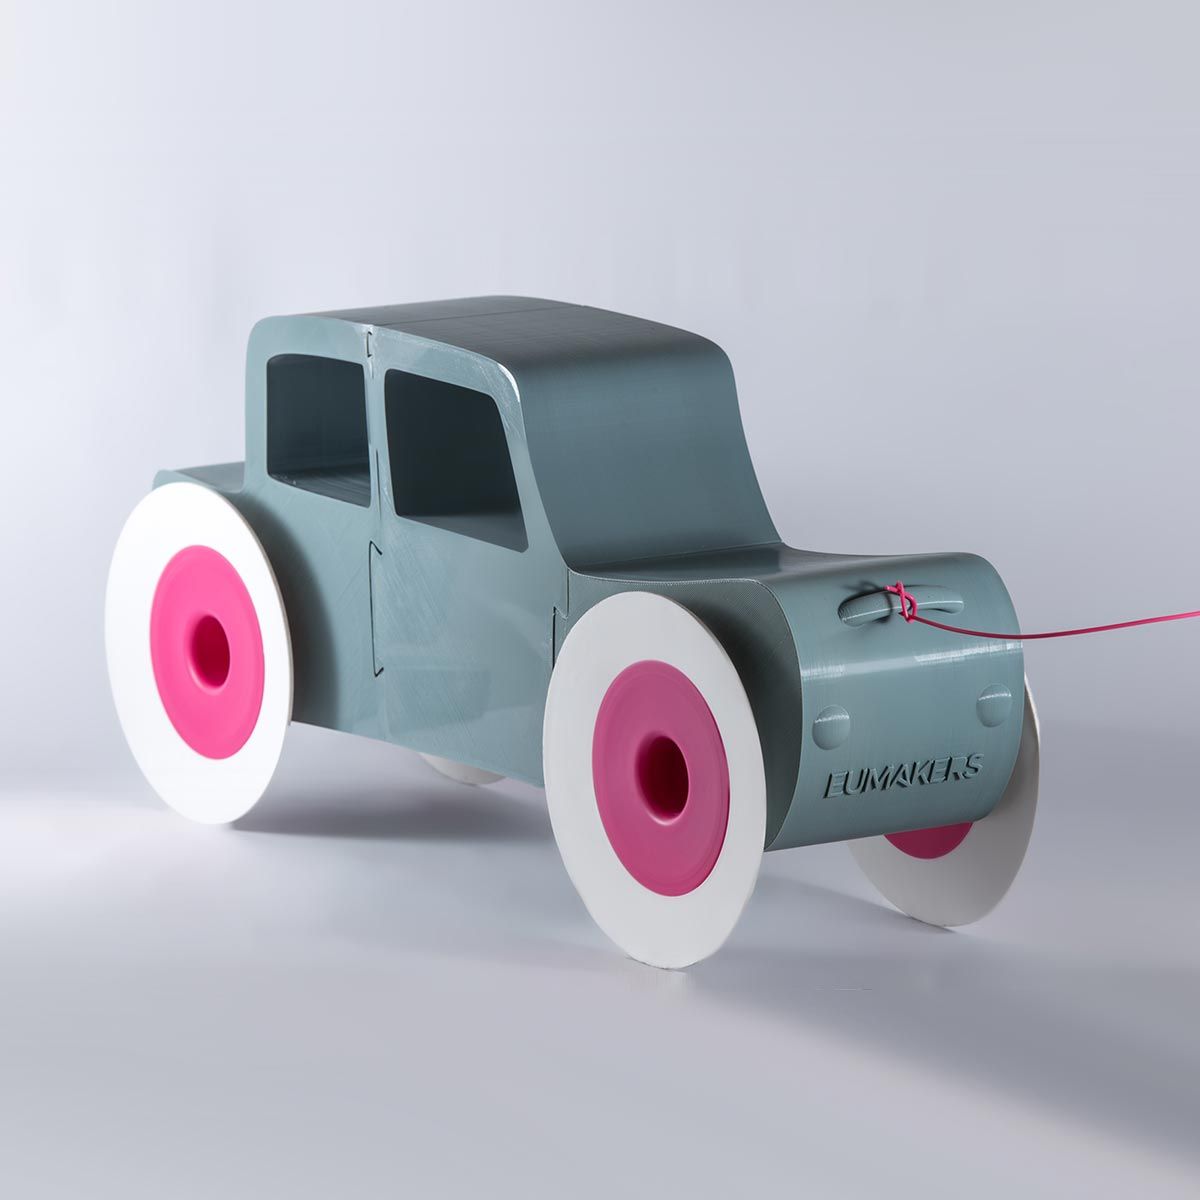 EUMAKERS' Car [Toy Car]